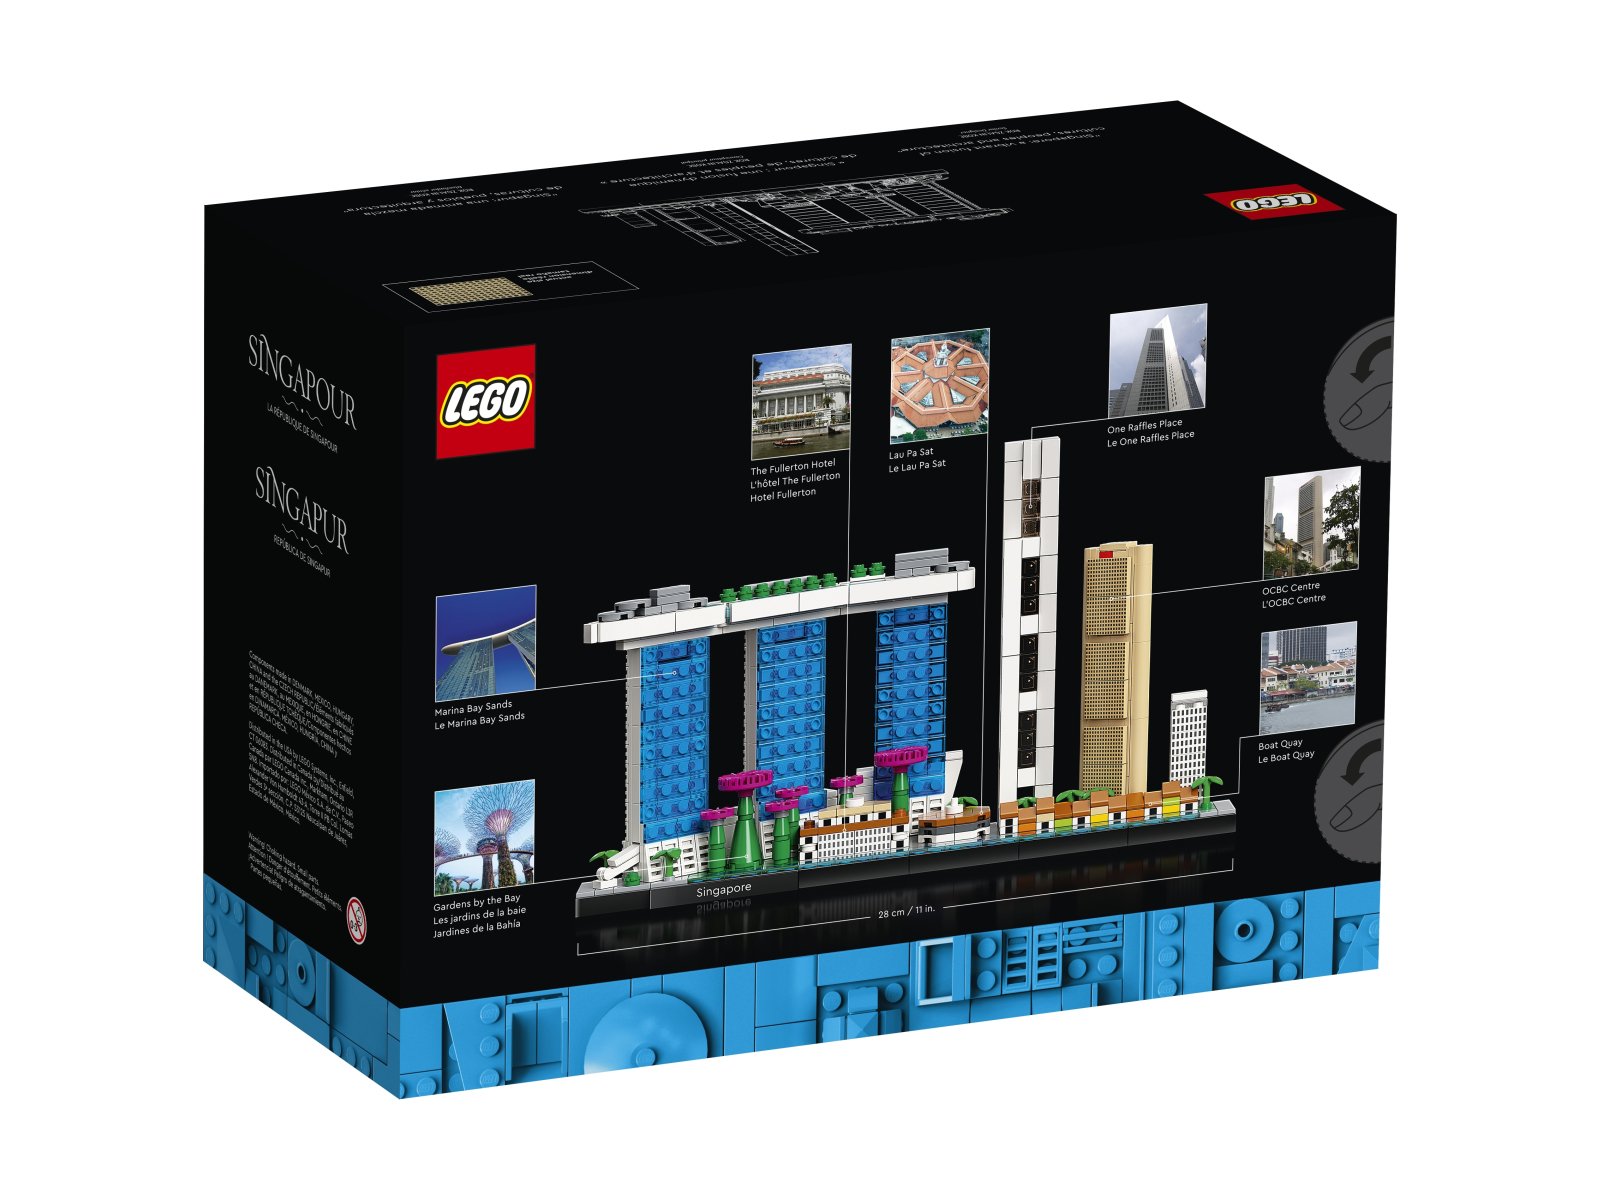 LEGO 21057 Architecture Singapur